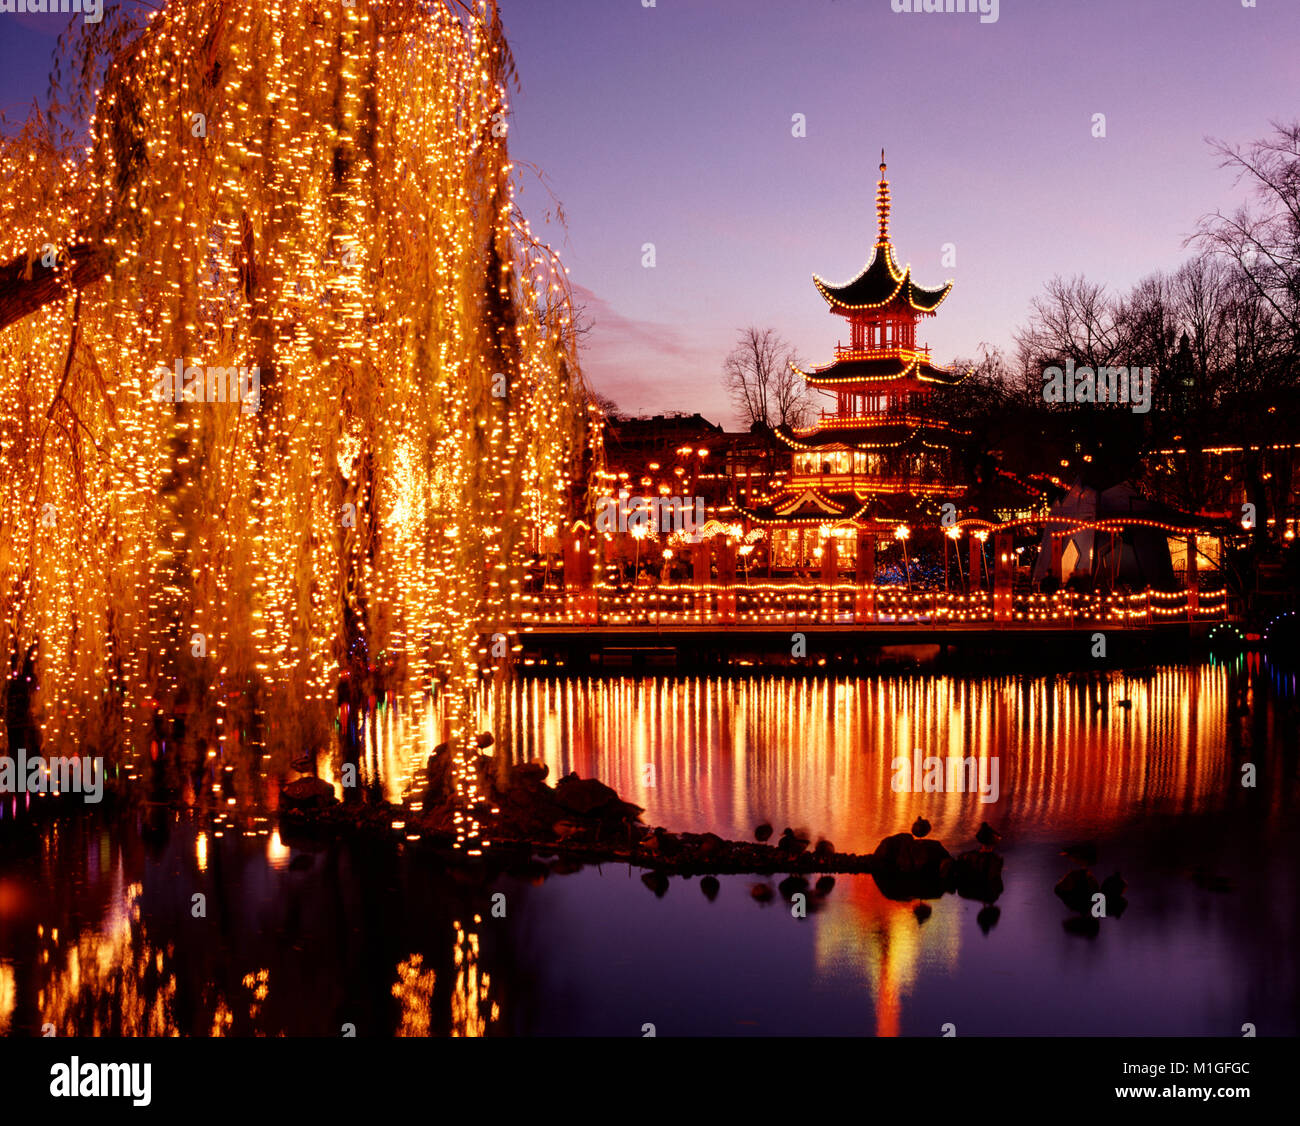 Die Tivoli Gärten für Weihnachten, Kopenhagen, Dänemark eingerichtet. Stockfoto